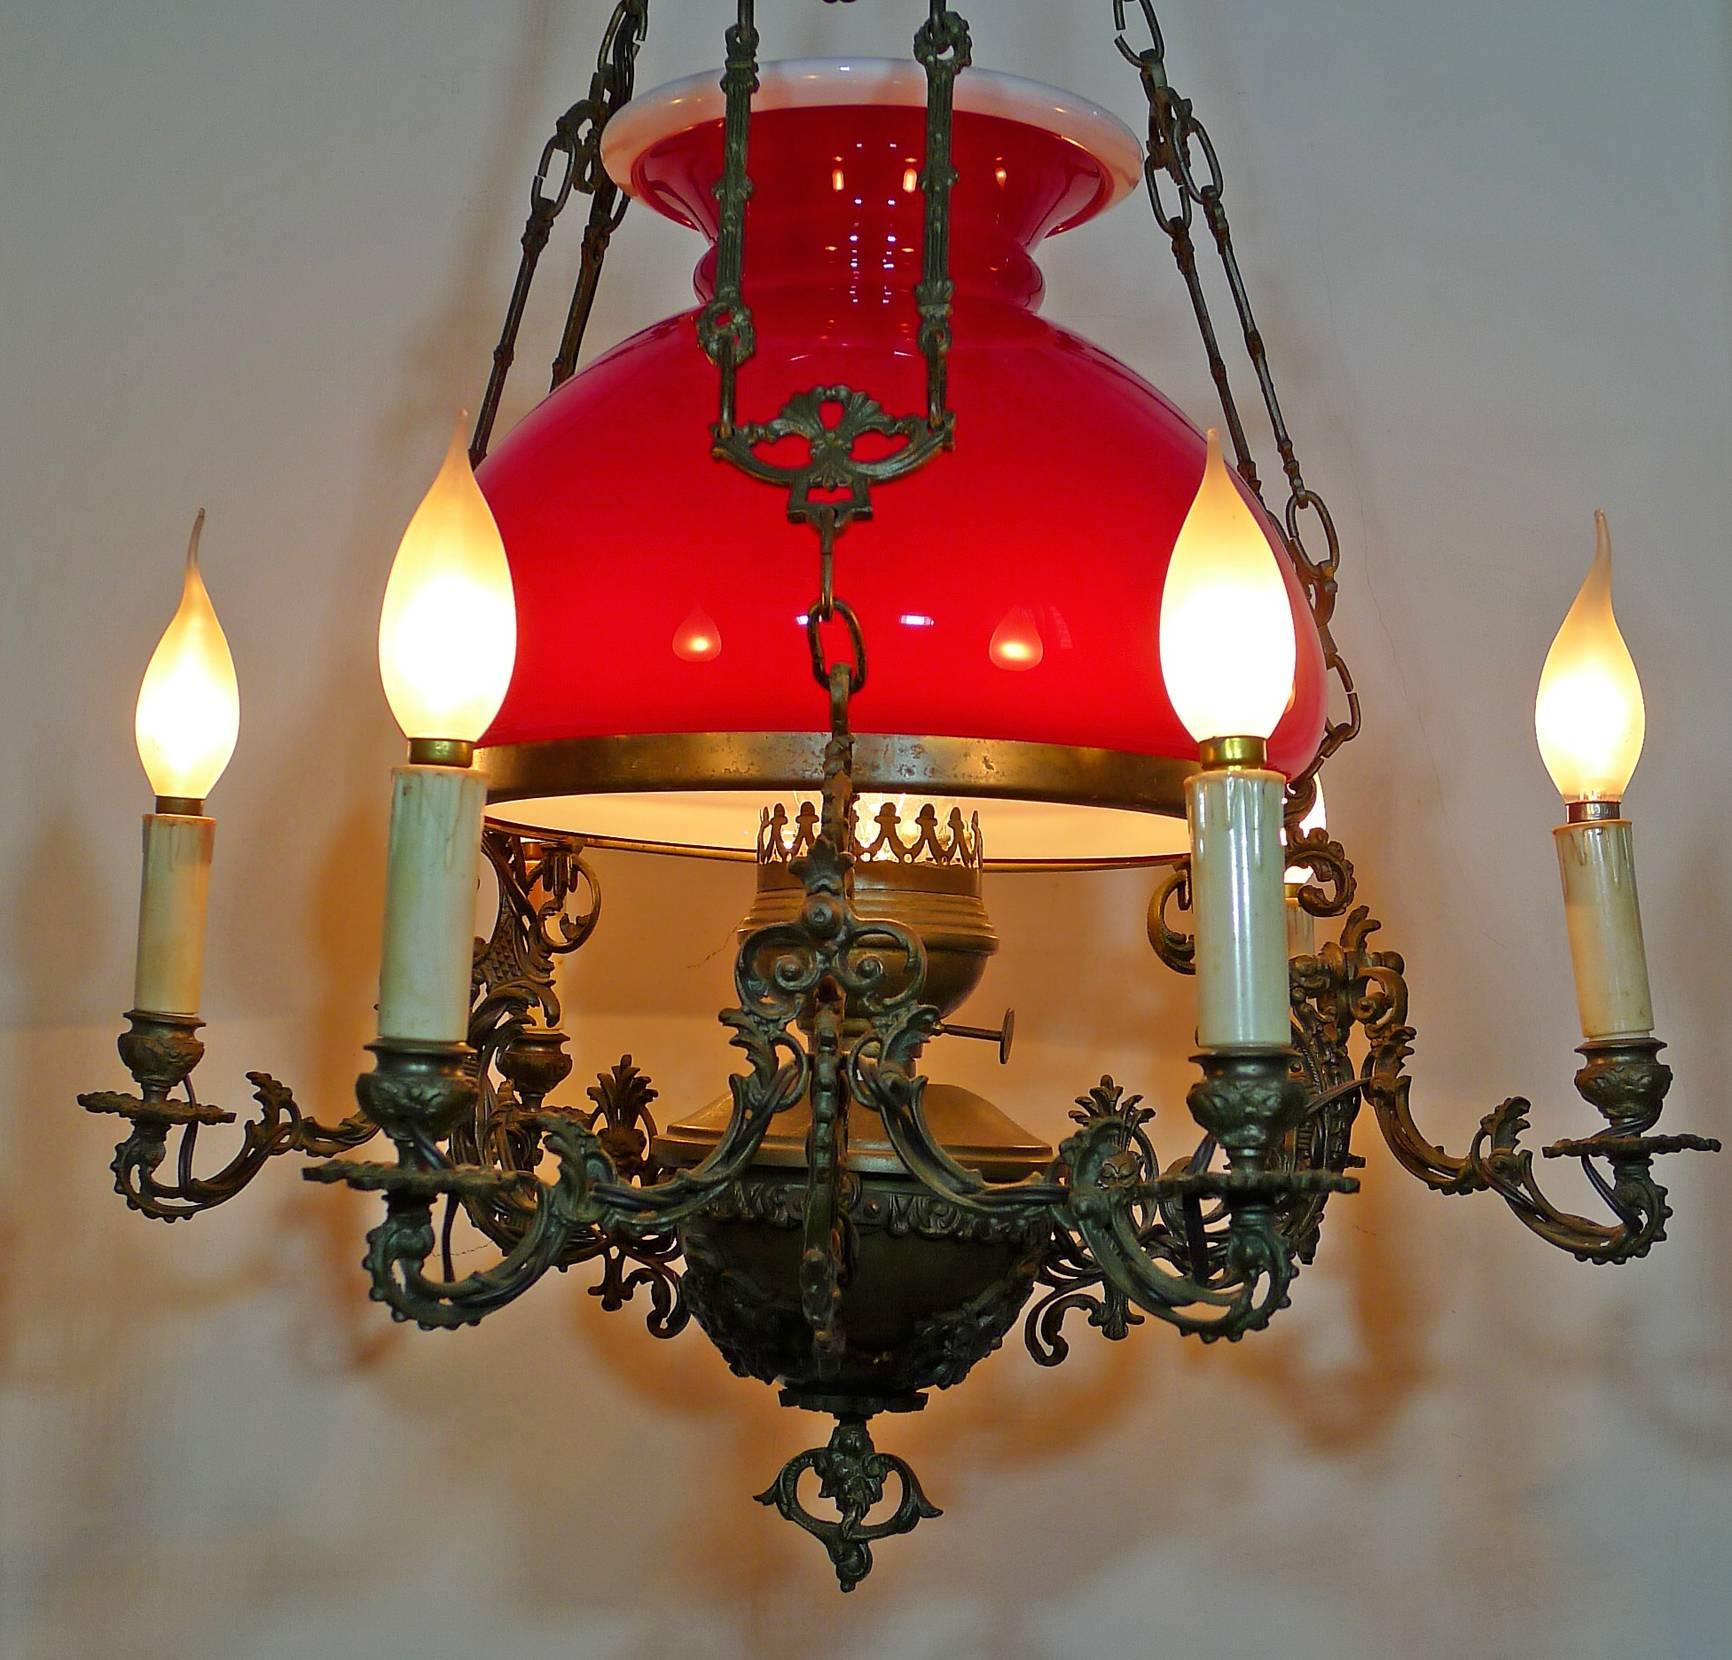 red oil lamp light